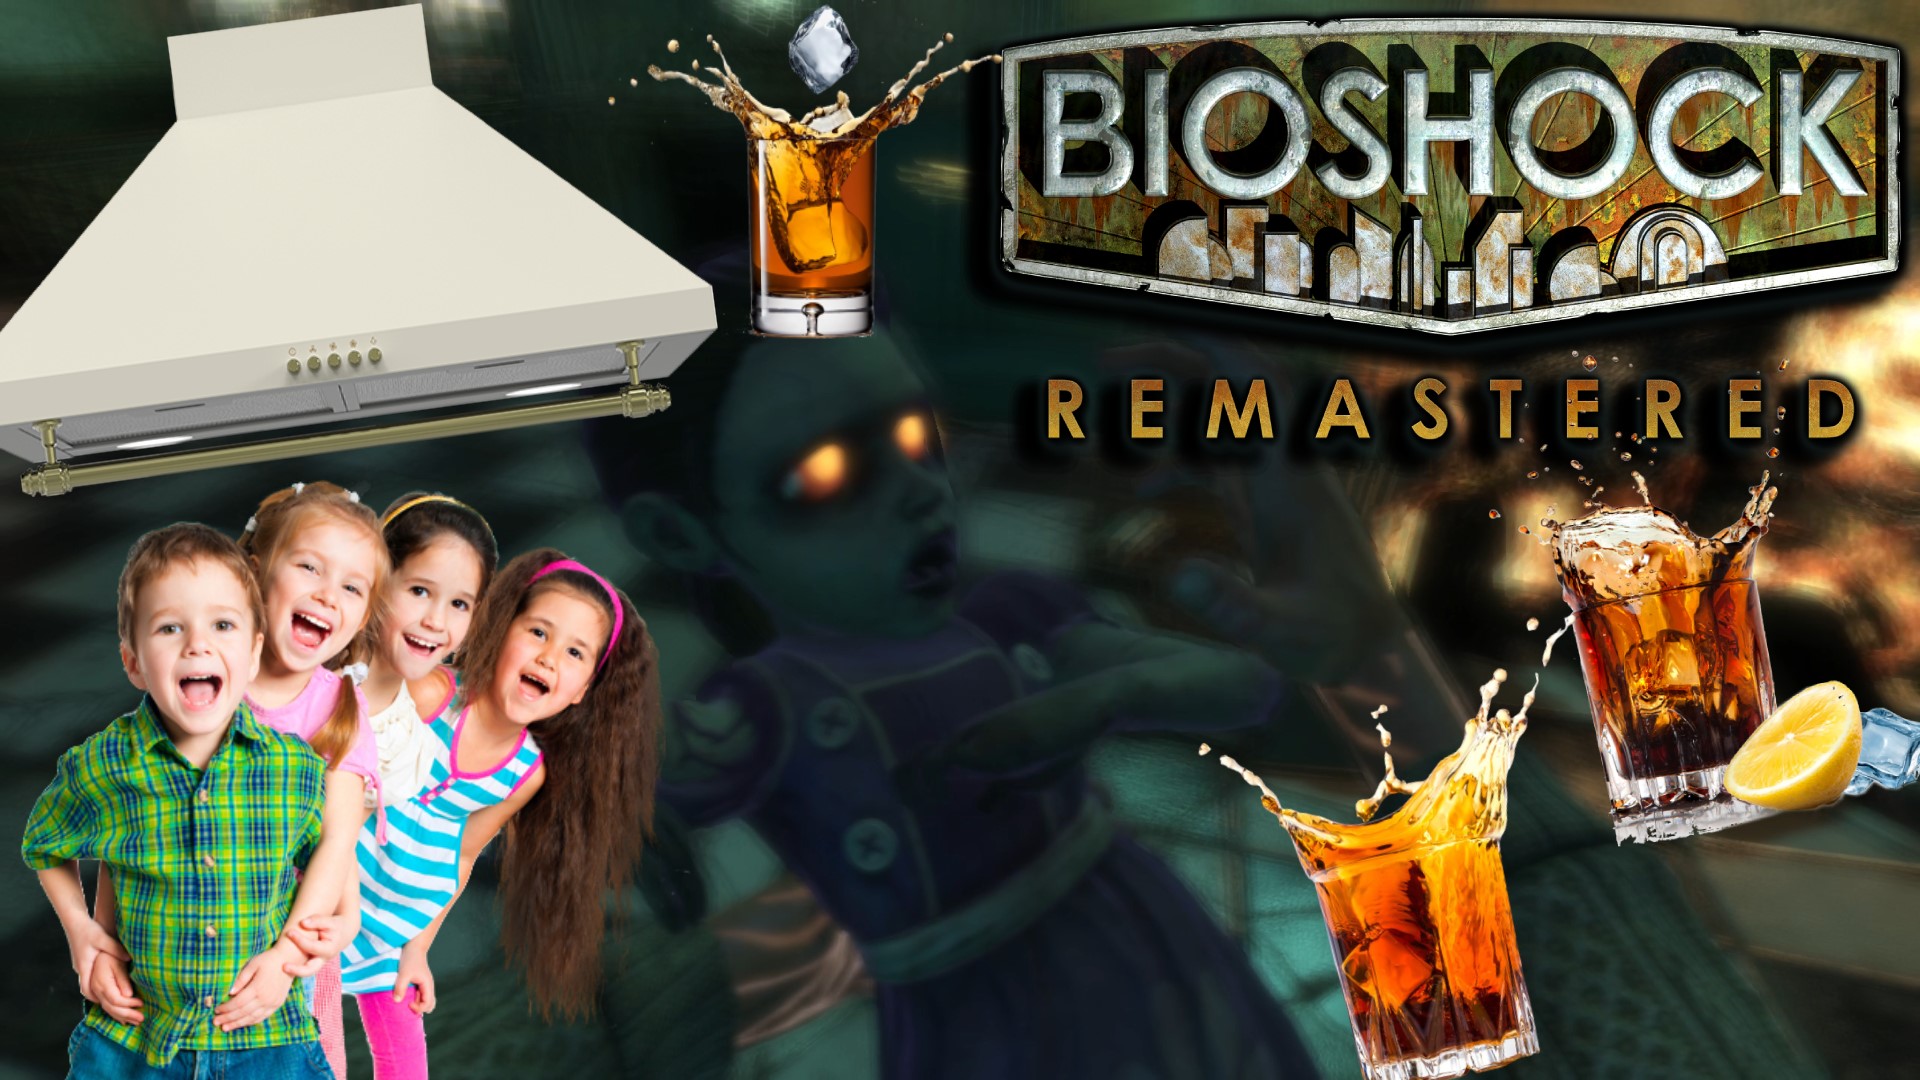 ТРОЙНАЯ ПОРЦИЯ ВЫТЯЖКИ ИЗ ДЕТЕЙ ▻ BioShock Remastered #4